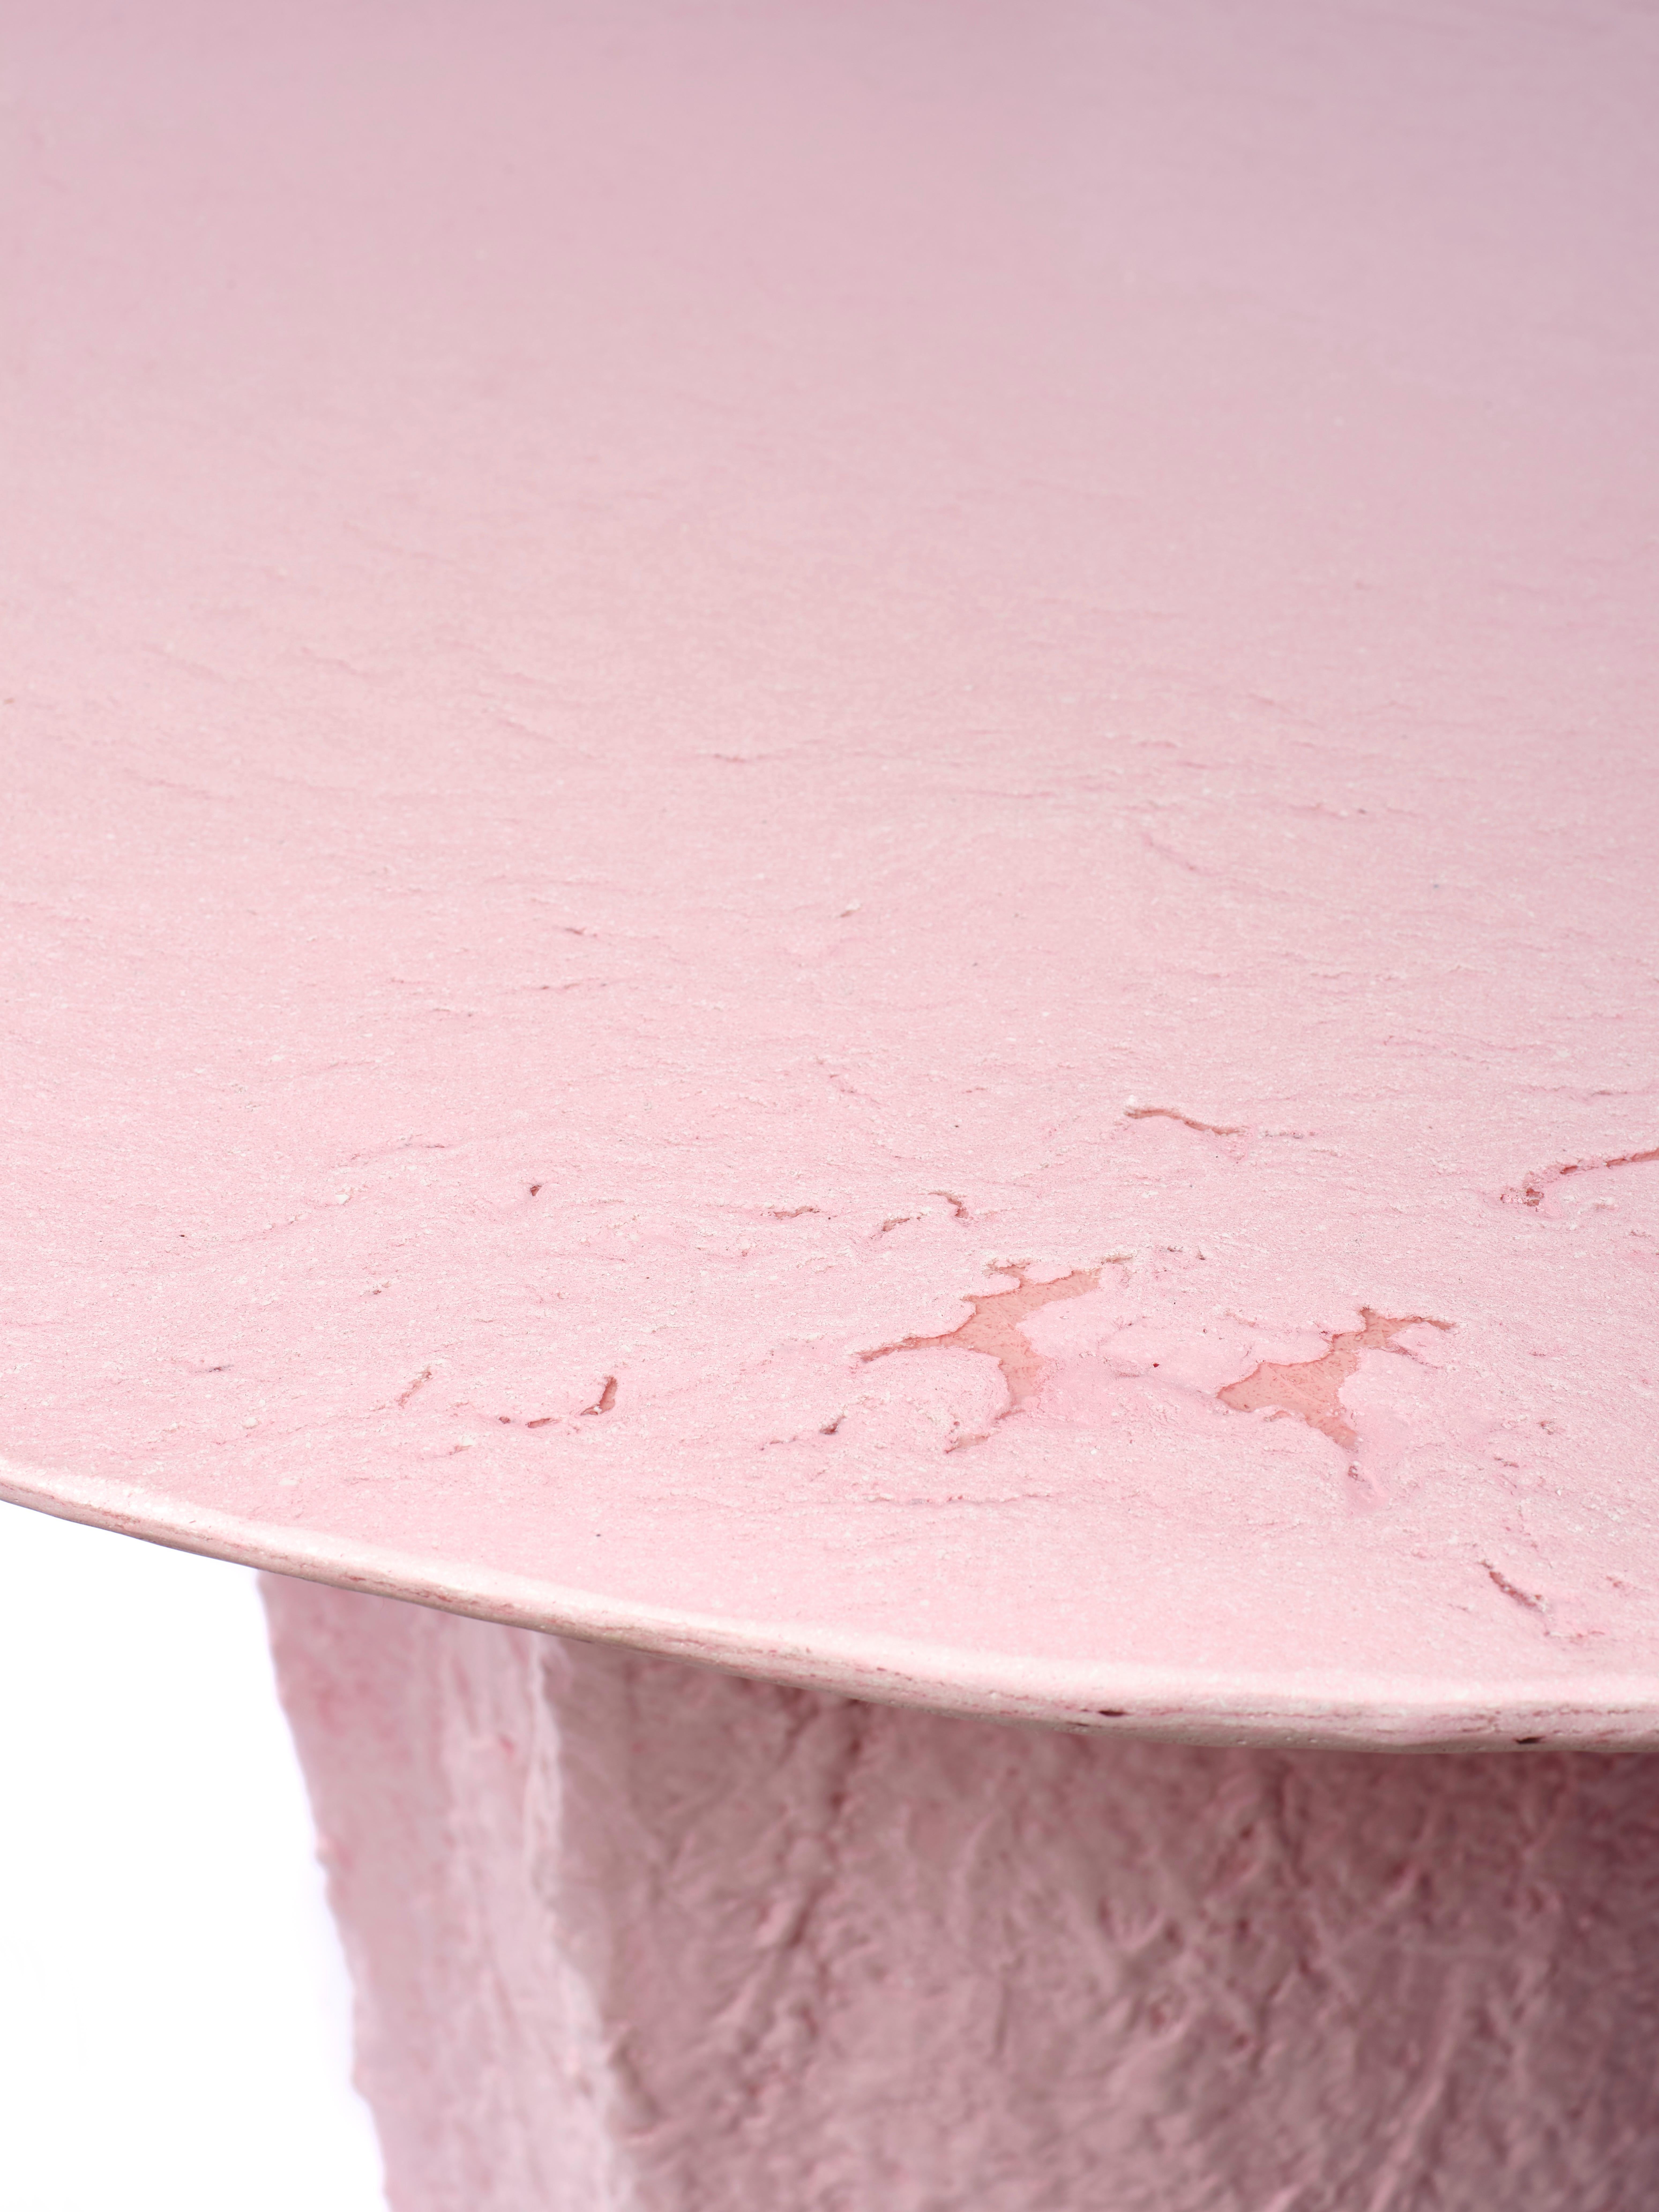 La table Kernel rose est une pièce unique réalisée entièrement à la main par le designer. Entièrement construit en Glebanite, un mélange spécial de fibres de verre recyclées et recyclables. Une œuvre artistique d'économie circulaire qui prend soin